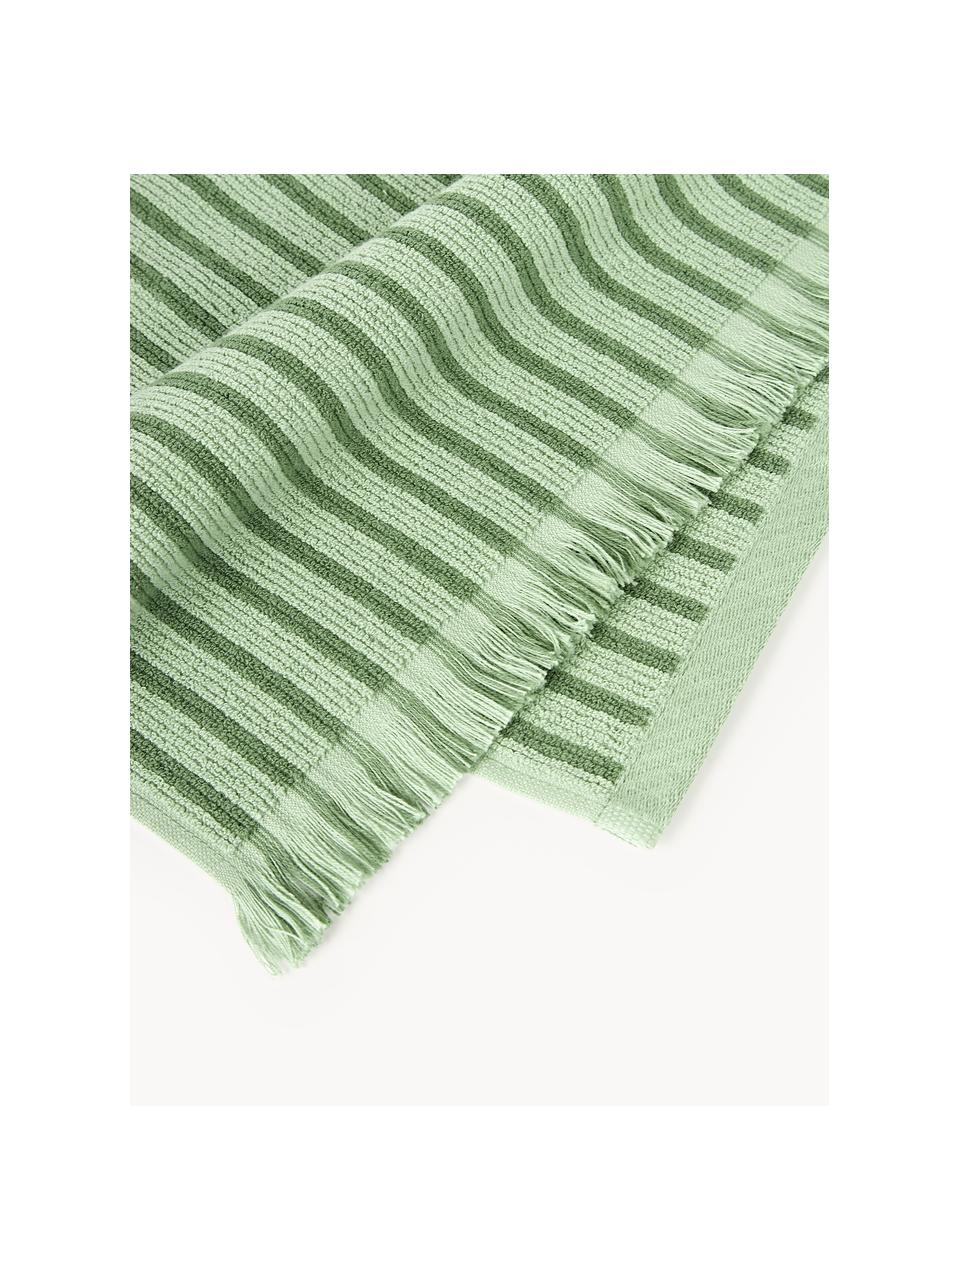 Handdoekenset Irma, verschillende formaten, Groen, set van 4 (handdoek & douchehanddoek)